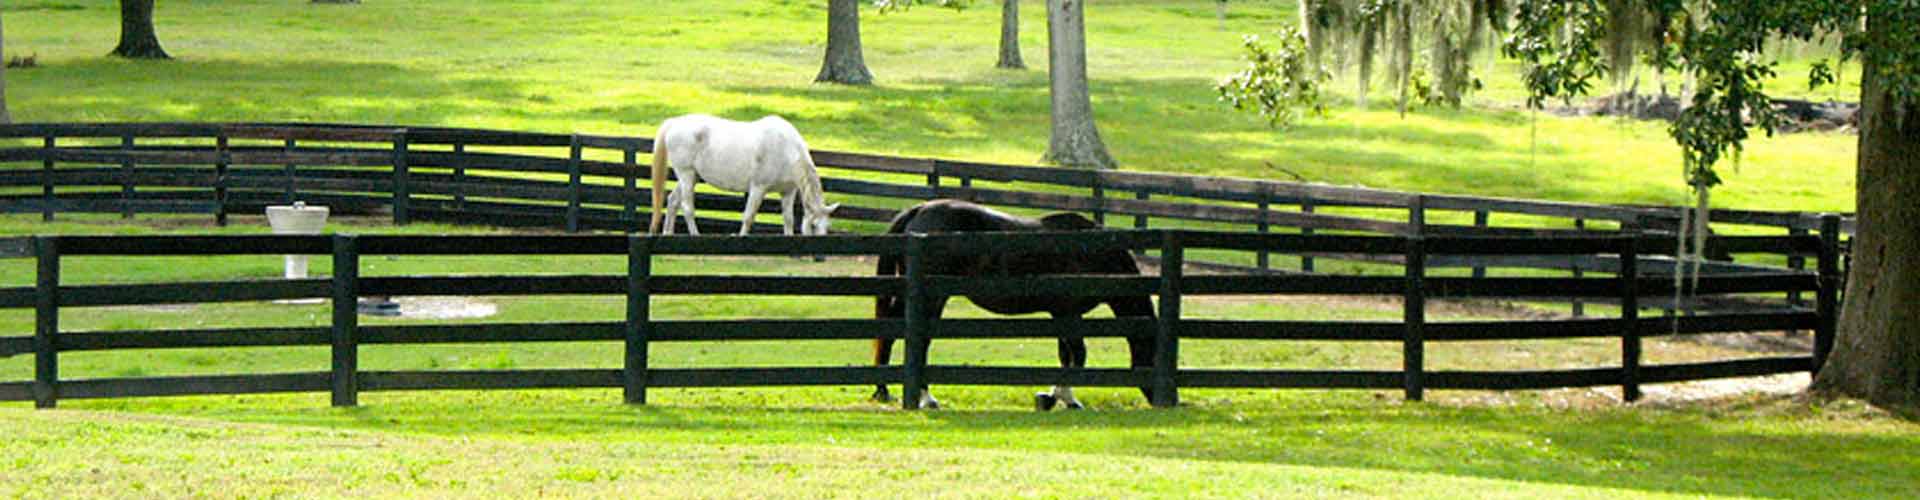 Ocala Florida Horse Farms